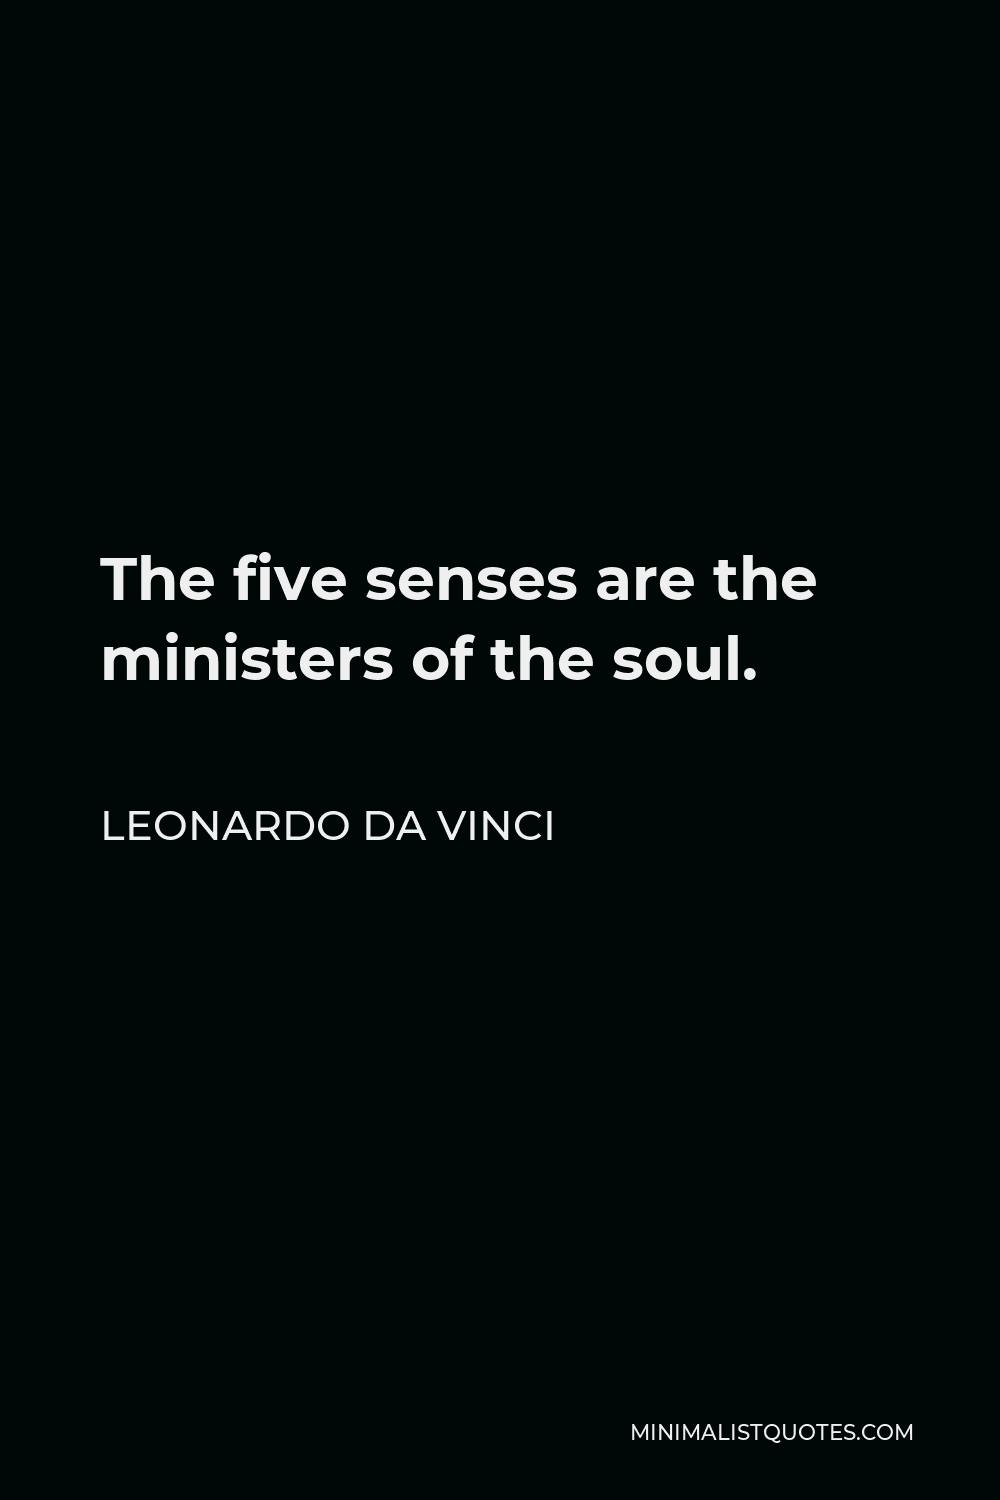 Leonardo da Vinci Quote - The five senses are the ministers of the soul.